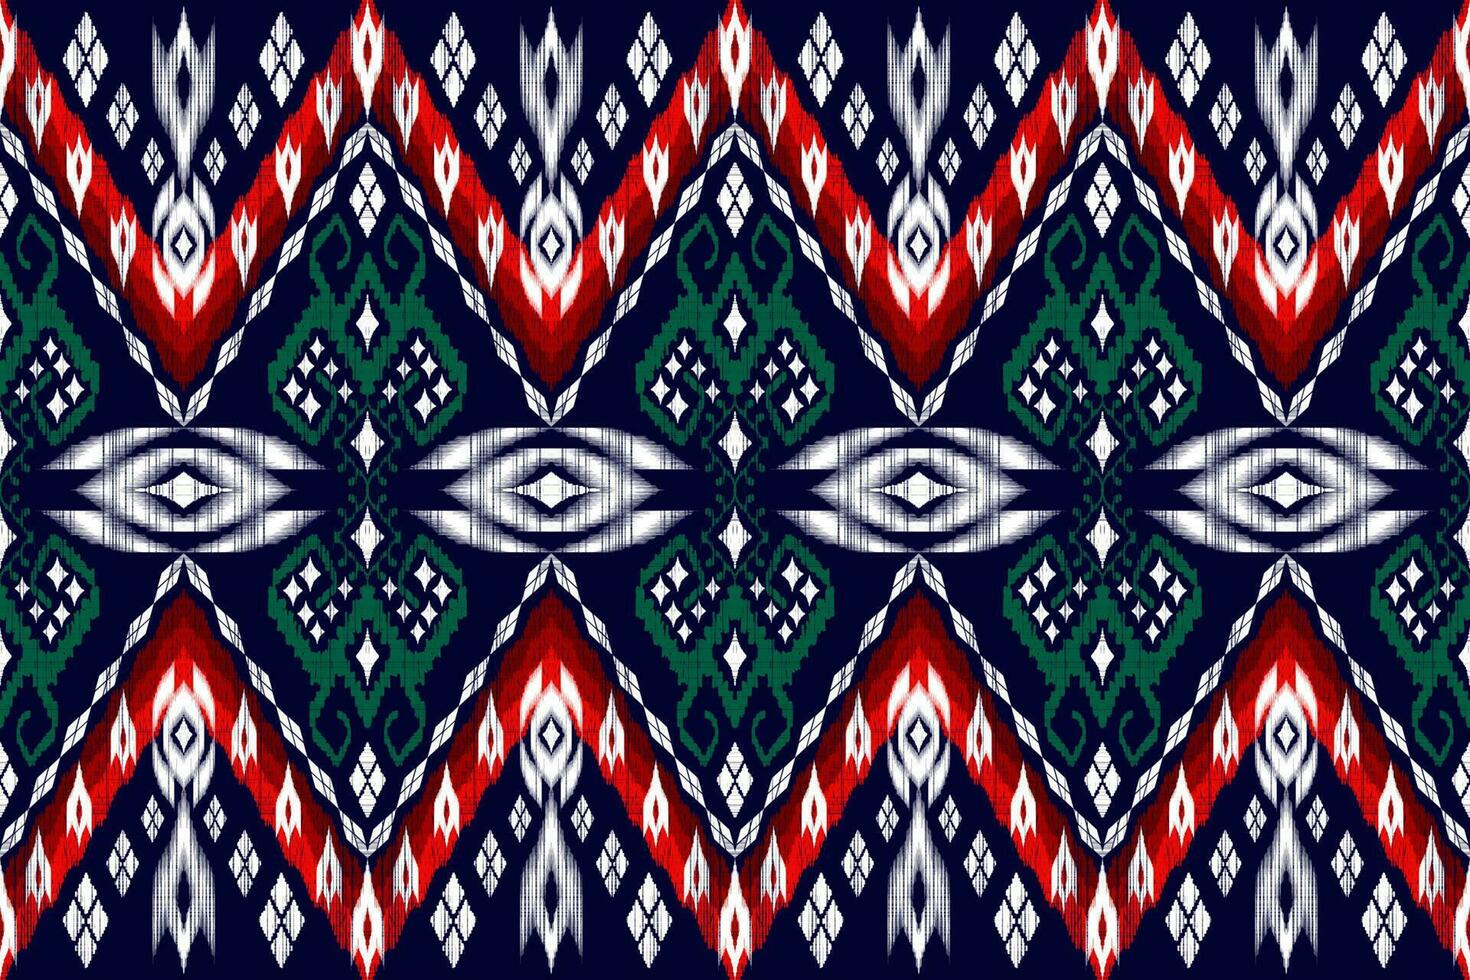 ikat figure aztèque broderie style. géométrique ethnique Oriental traditionnel art conception des motifs pour ethnique arrière-plan, papier peint, mode, vêtements, emballage, tissu, élément, sarong, graphique, vecteur illustration